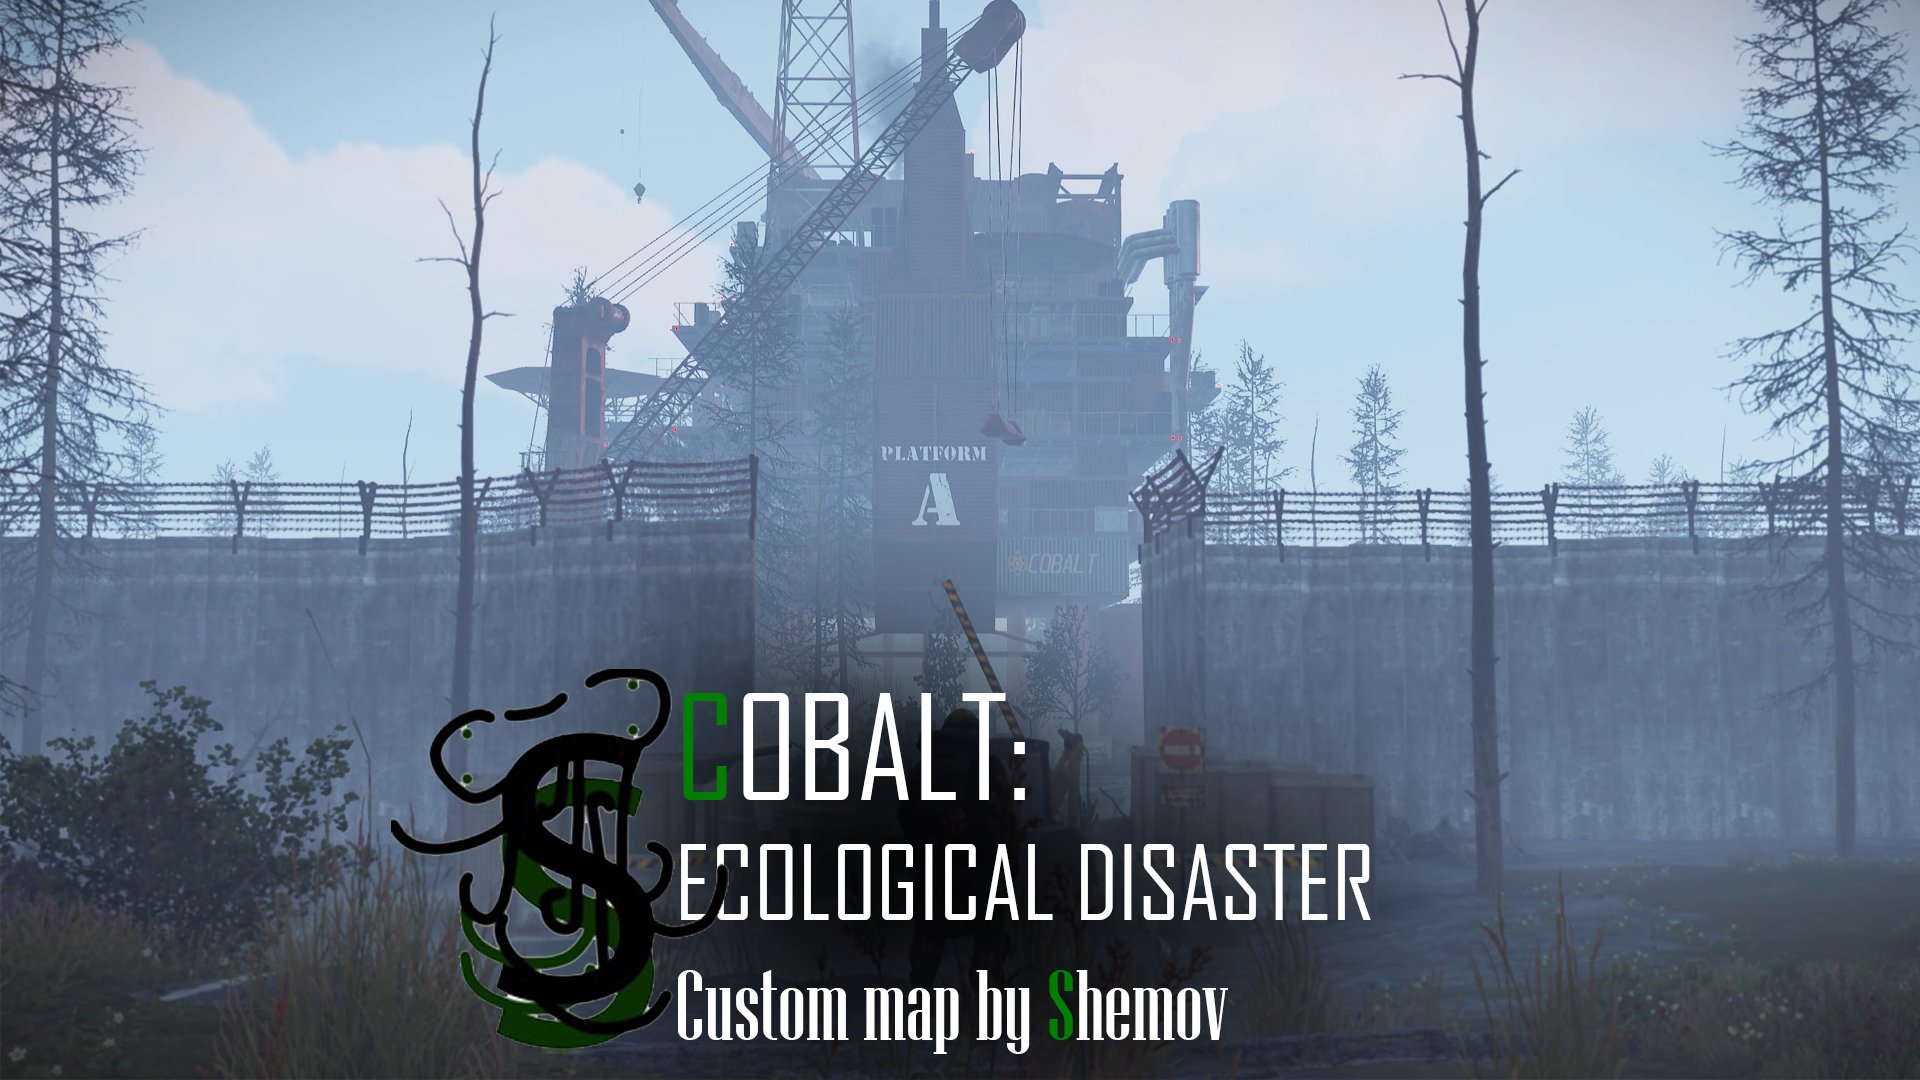 COBALT: Ecological Disaster | Custom map by Shemov